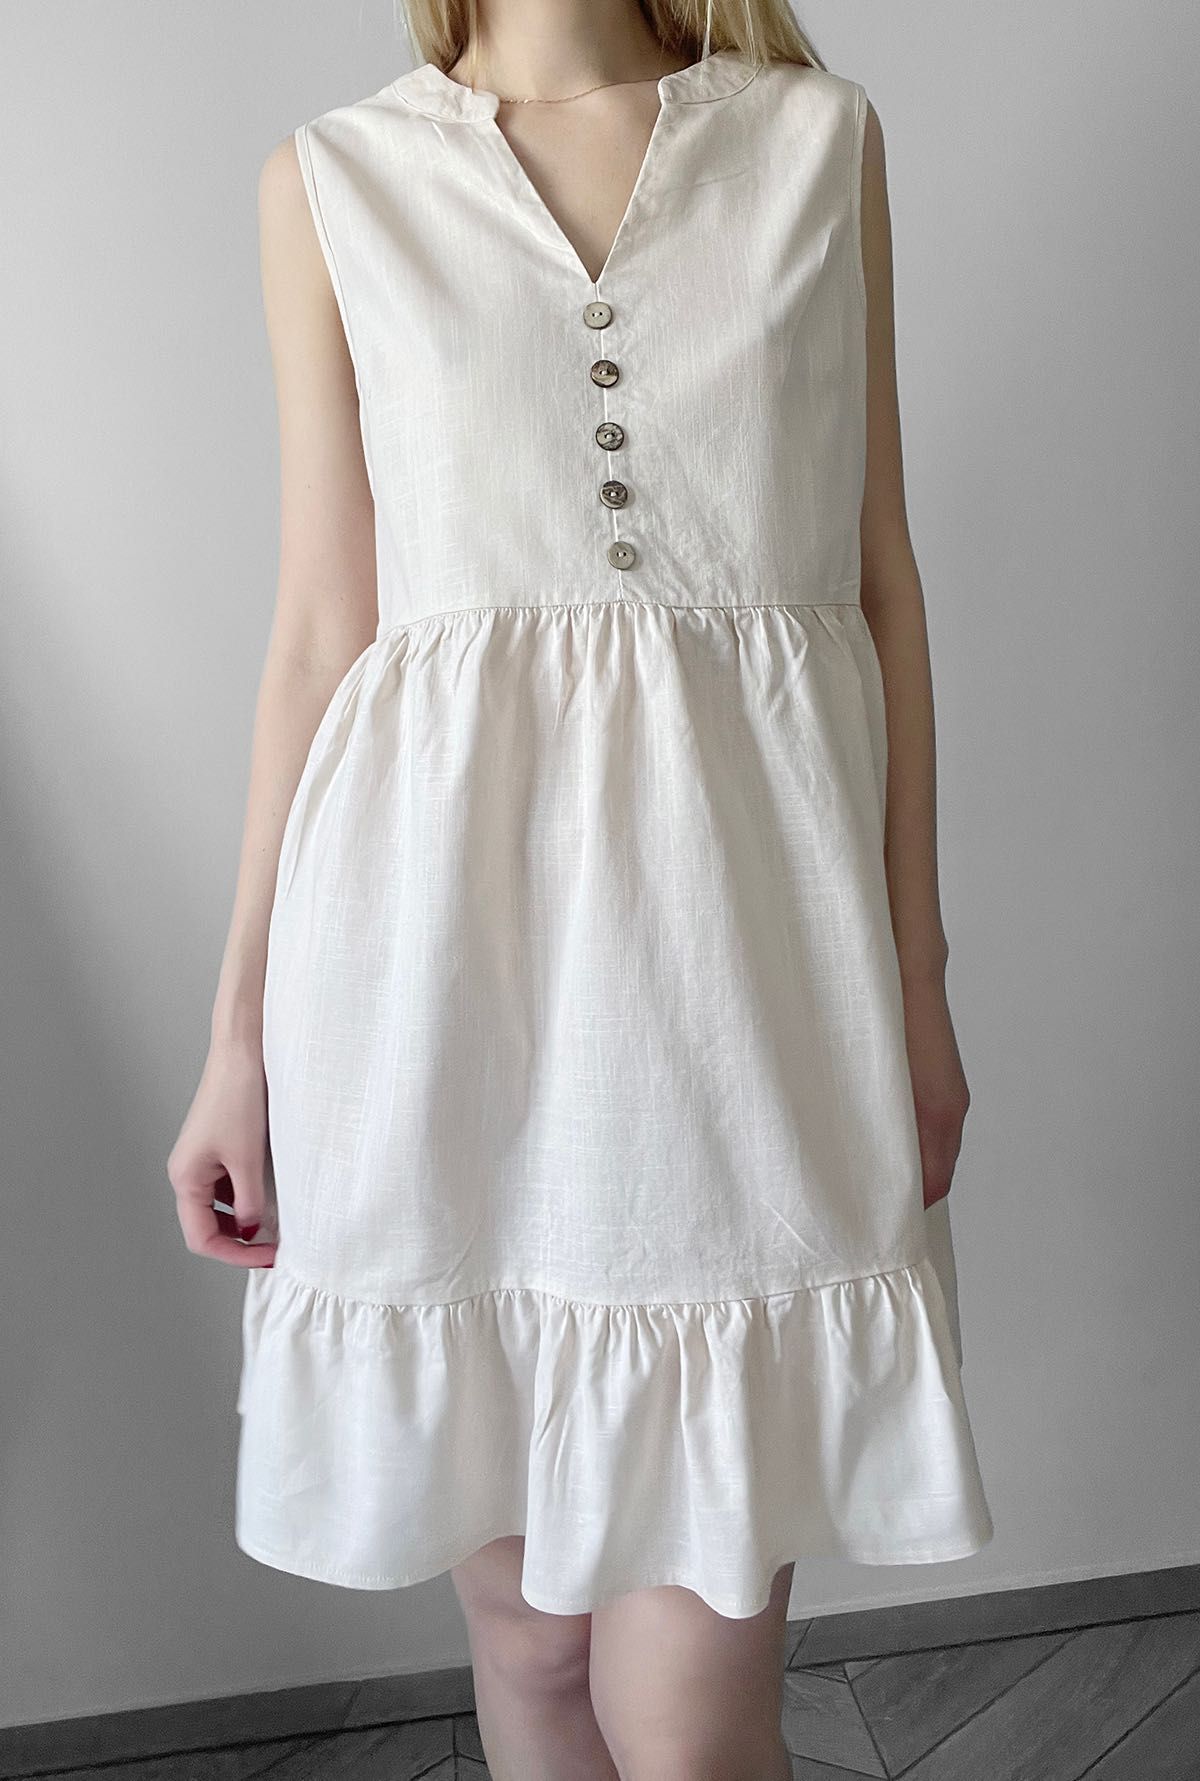 Beżowa sukienka krótka falbanka 100% bawełna wiosna bawełniana nowa